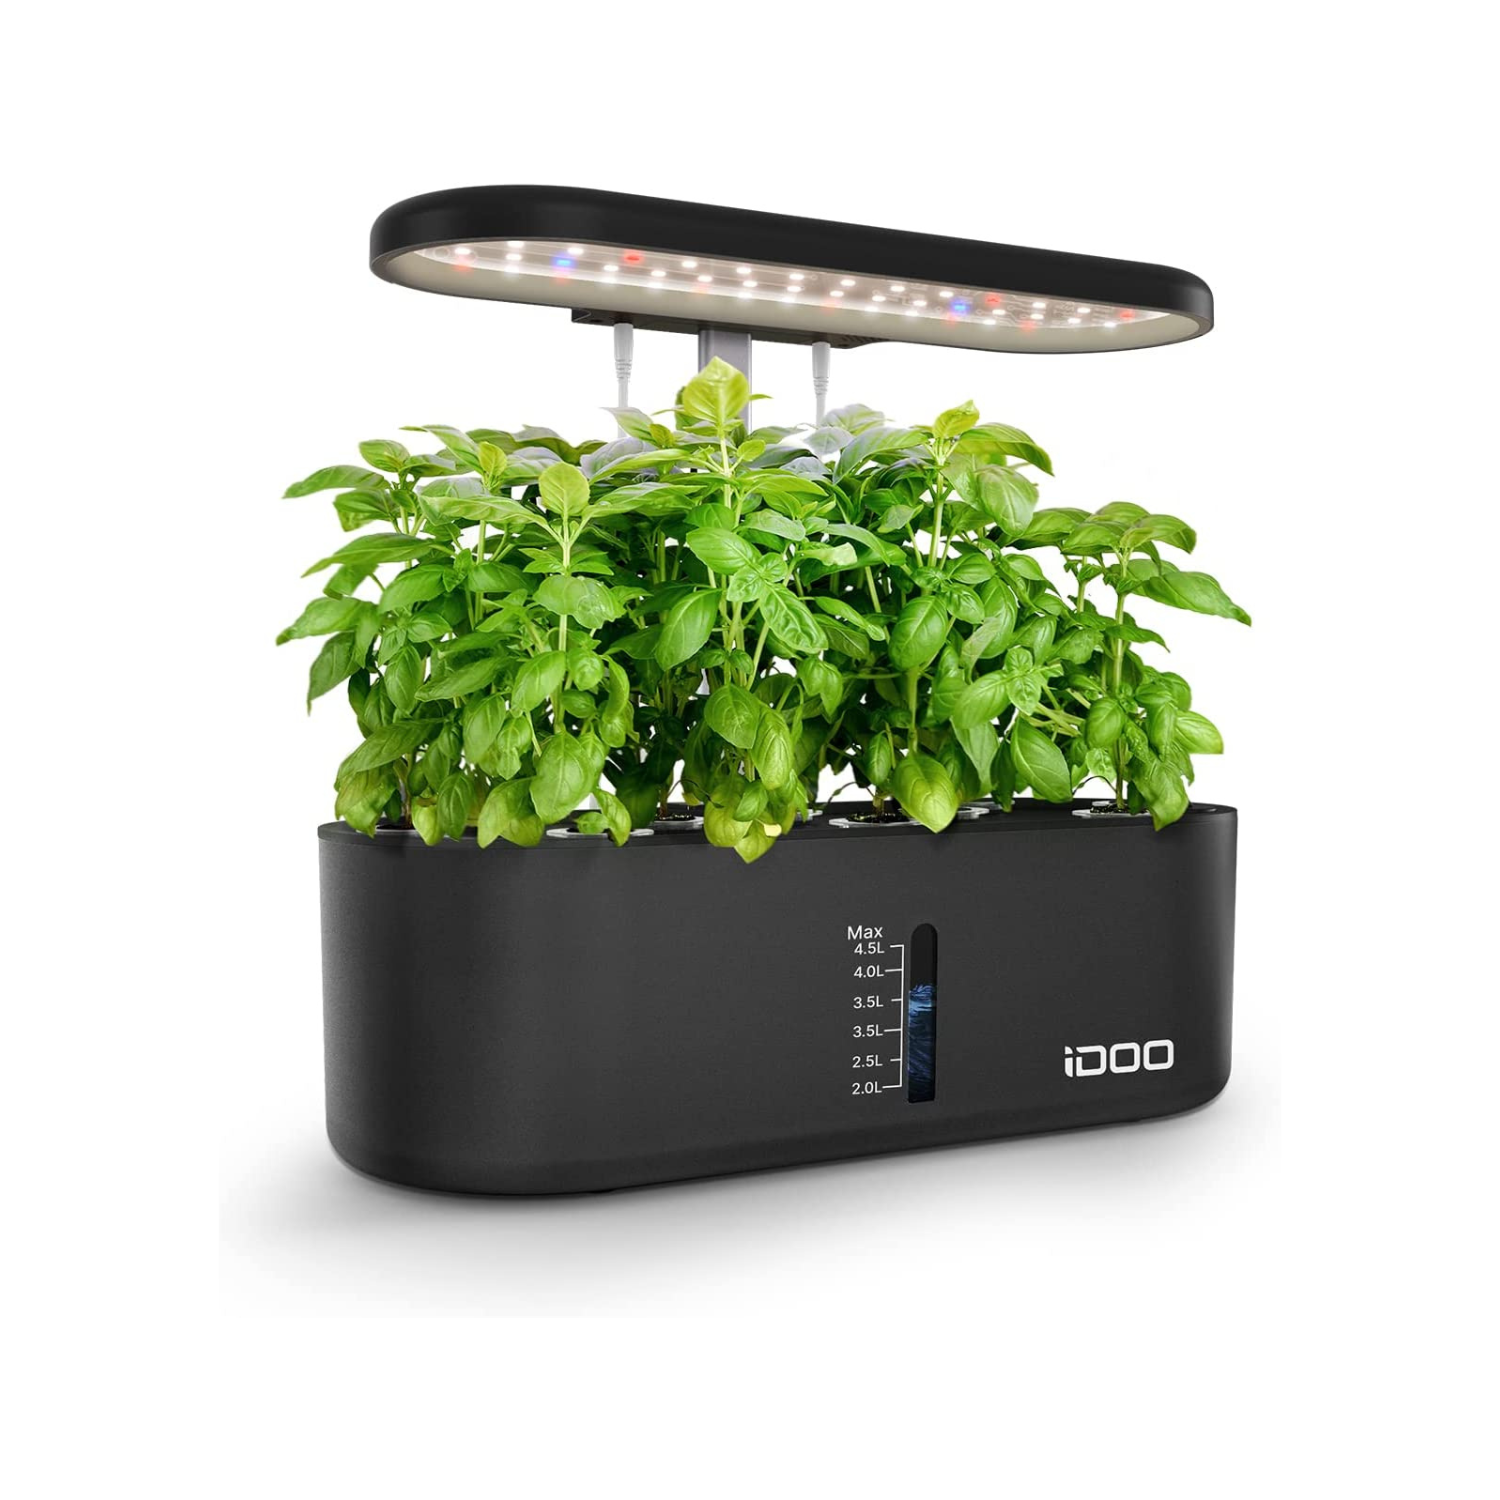 iDOO 10 pods Indoor Herb Garden, Hydroponics Growing System - Hydroponic Growing System Hydroponic Growing Systems by idoo